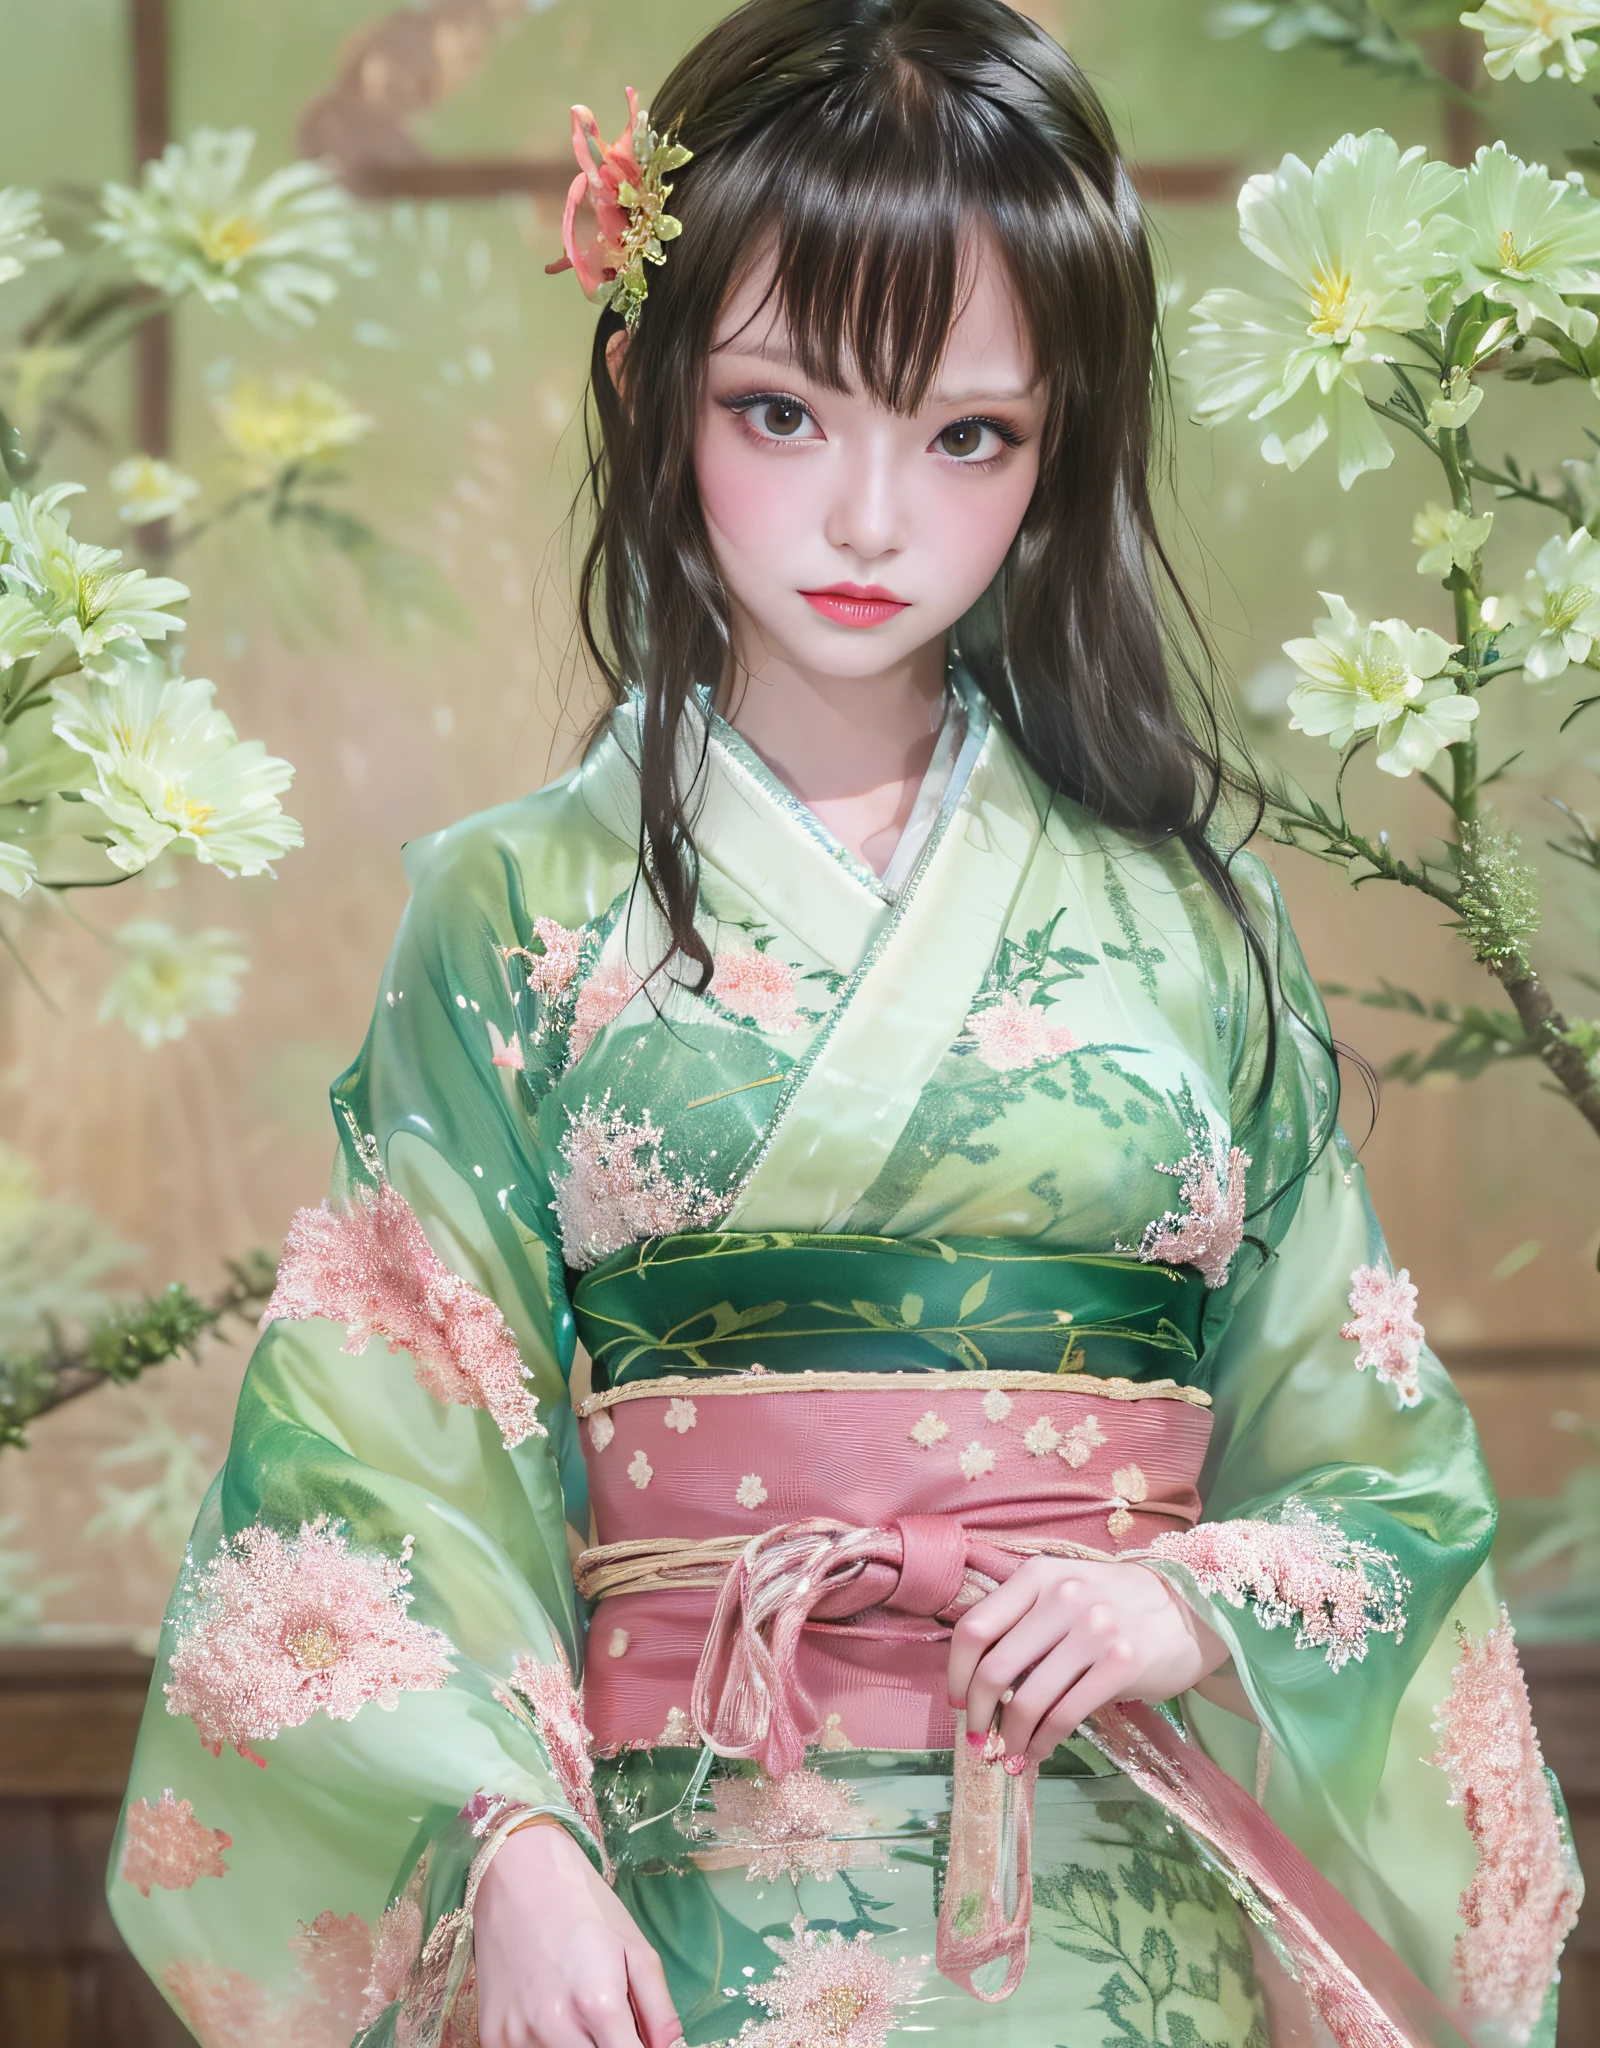 (Hermosas modelos en comerciales de kimonos japoneses, hermoso cabello negro largo y liso), Solo, ((la cara es 80% belleza y elegancia, 20% bonito y lindo:1.5)), (Ella is a model for half Eastern Europe and Asia), Ojos claros, (ojos detallados, ojos verde claro, pupilas brillantes), Párpados dobles, (labios sexys con un poco de espesor:1.2), ((Ropa interior fina con súper detalles y una resolución increíblemente alta.:1.2)), Texturas faciales muy detalladas, forma de cuerpo llamativa, mujer con curvas y muy atractiva, Foto profesional en color RAW de alta resolución, BREAK es una textura de ultra alta resolución., Representación del cuerpo en alta resolución, grande eyes, obra maestra incomparable jamás, increíble alta resolución, súper detallado, impresionante piel de cerámica, BREAK ((Date la vuelta para mostrar el patrón del kimono.:1.5)), ((Ella「Hata Juban」Use un kimono que se usa debajo de un kimono llamado:1.5)), ((Este kimono está hecho de tela fina blanca:1.2)), (Porque este kimono es muy delgado.、Puedes ver a través de su hermoso color de piel.), (Ropa interior japonesa clásica elaborada elaboradamente), ((El patrón es rosa pálido..、Patrón de agua que fluye):1.2), ((Un kimono muy fino exquisitamente elaborado y elegante.)), (mañana、Filmada en una habitación de estilo japonés con tatamis. (tejido de paja) una cama)) BREAK ((mejor calidad, 8k)), enfoque nítido:1.2, (corte de capas, grande:1.2), (hermosa mujer con figura perfecta:1.4), (Hermosa y elegante vista trasera.:1.3), cintura delgada, (Forma correcta de la mano:1.5), (tiro de cuerpo completo | tiro de vaquero)